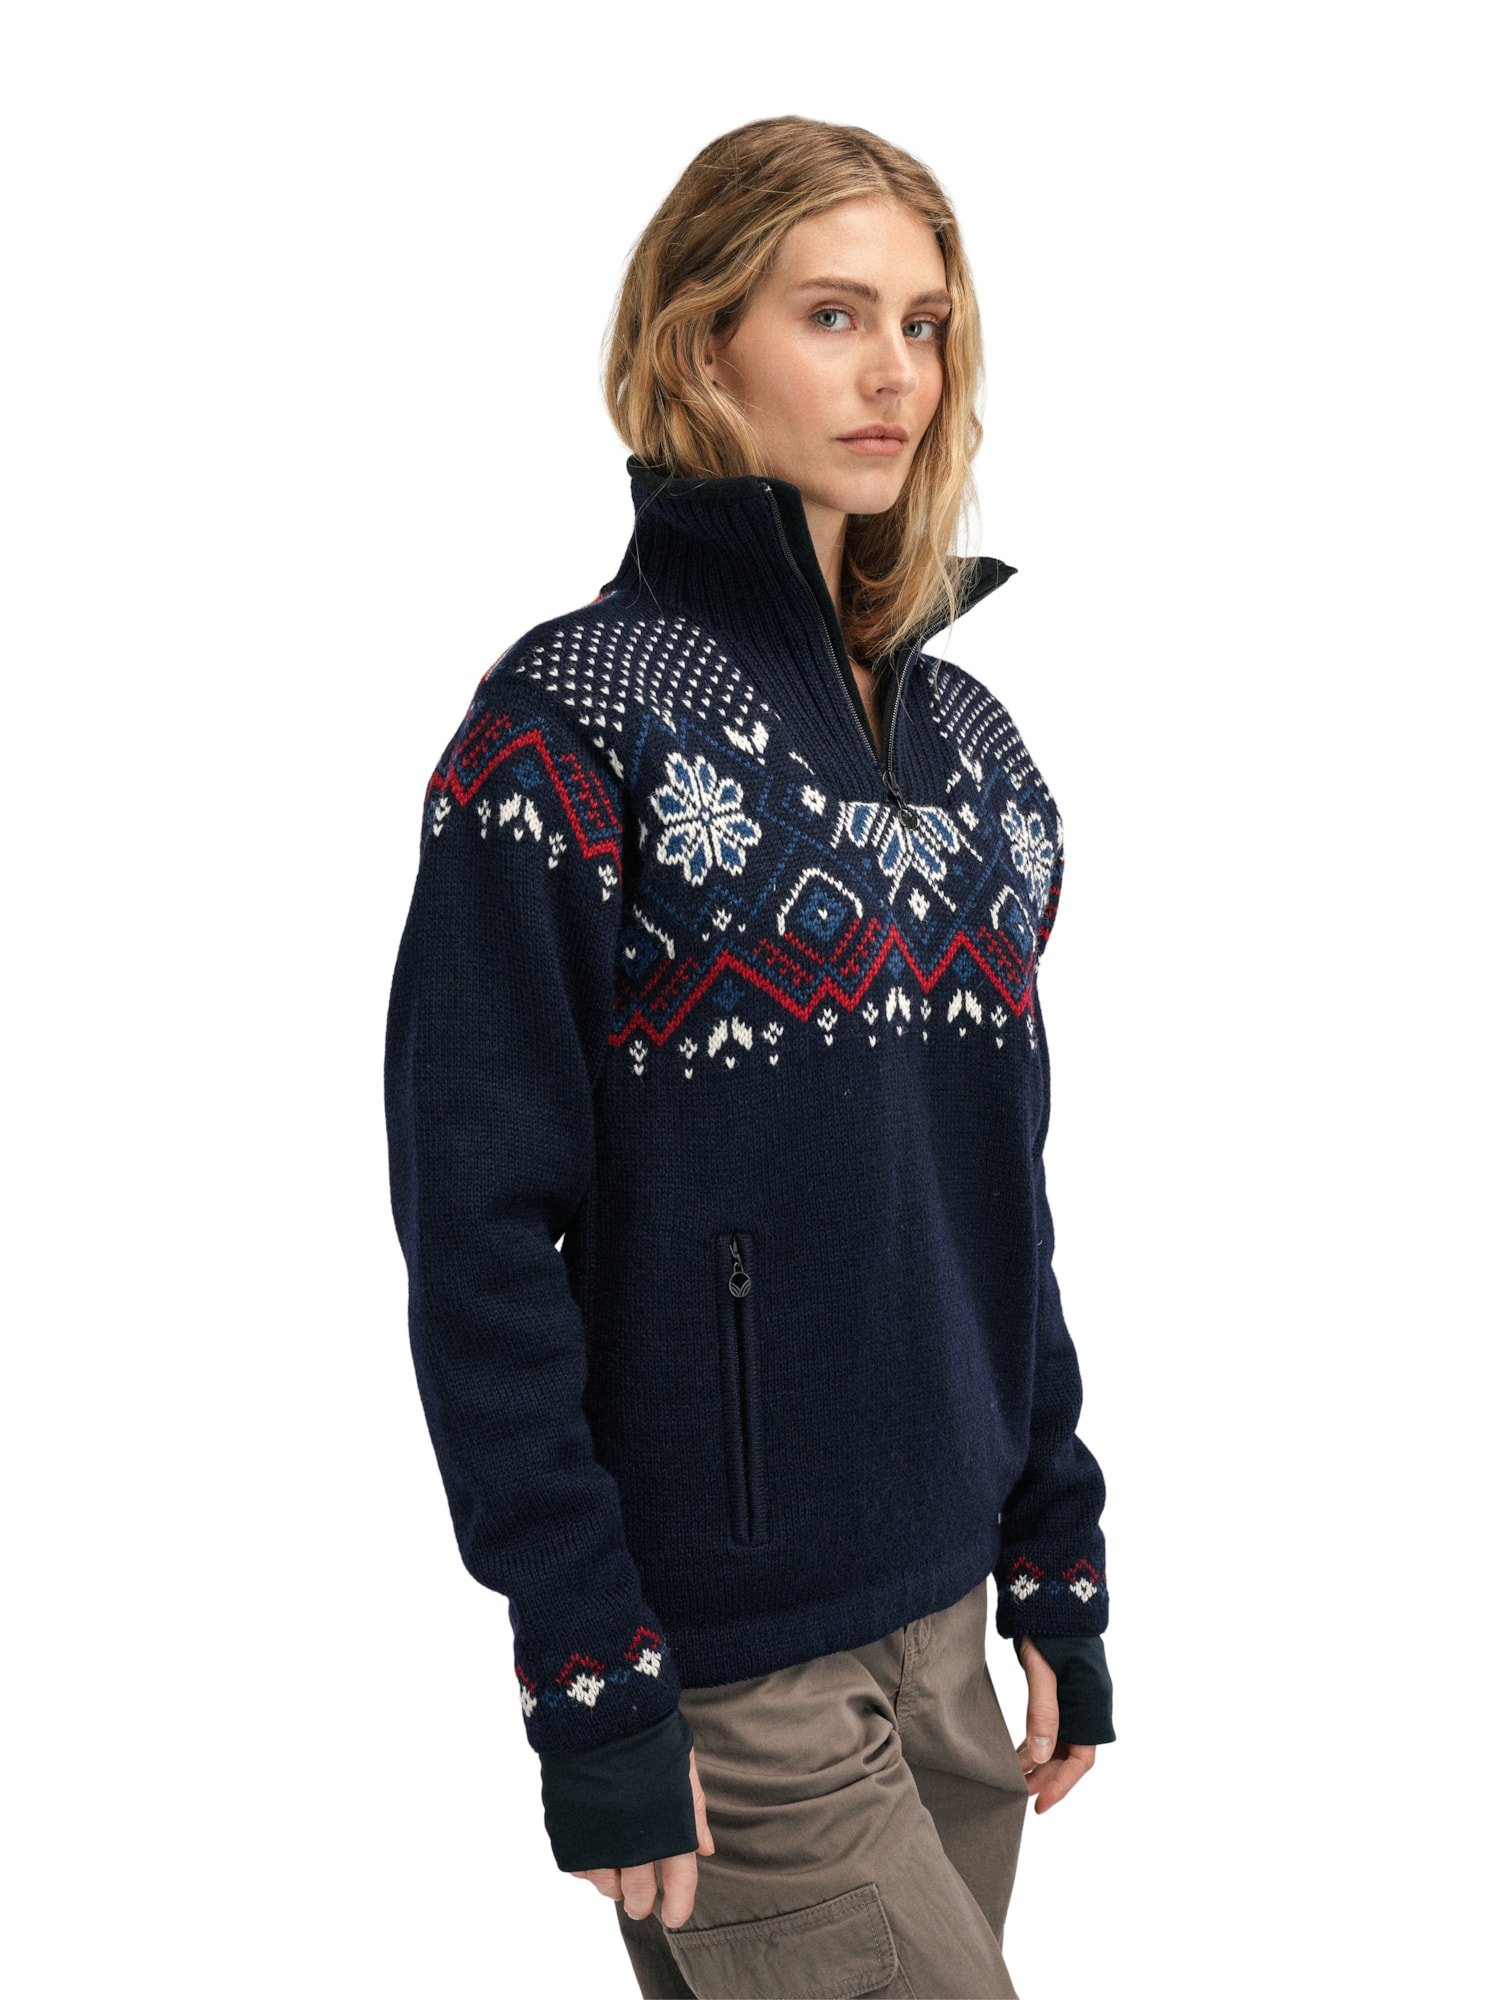 Fongen Weatherproof Sweater - Women - Navy - Dale of Norway - Dale of ...